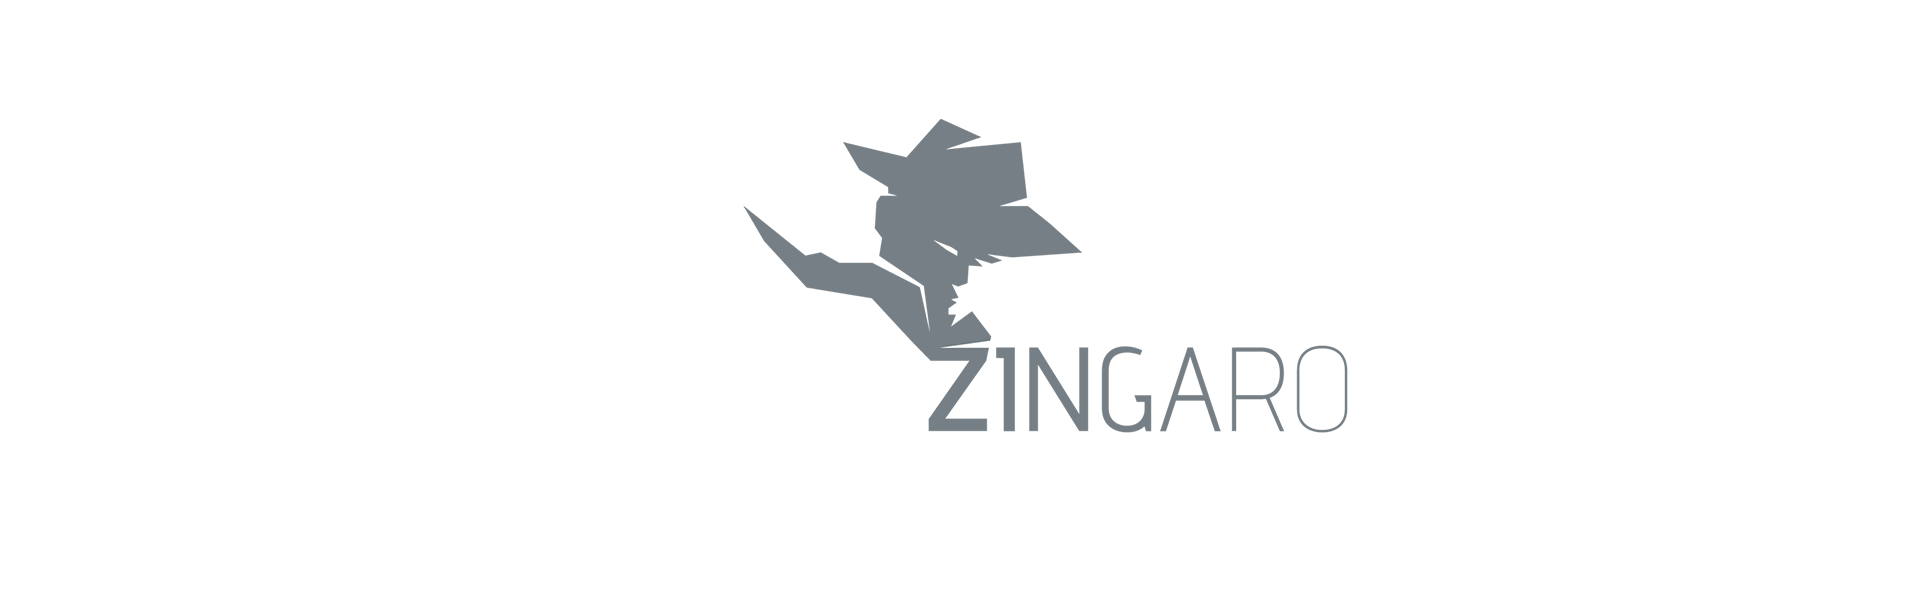 logotipo marca moda Zingaro